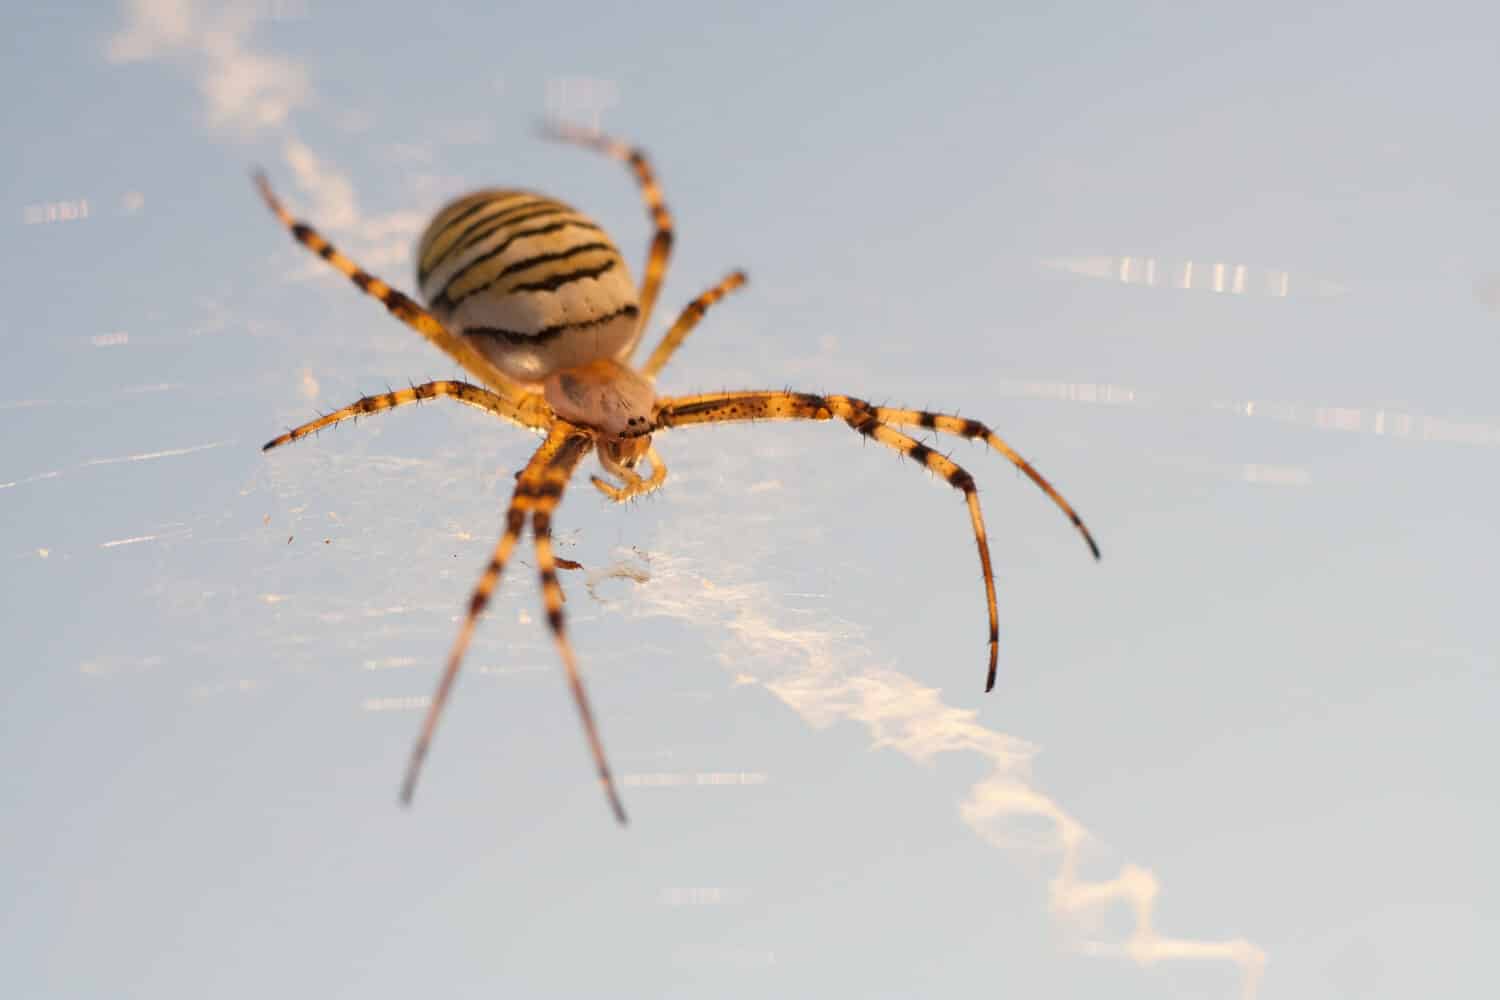 wasp spider - Argiope bruennichi on his web